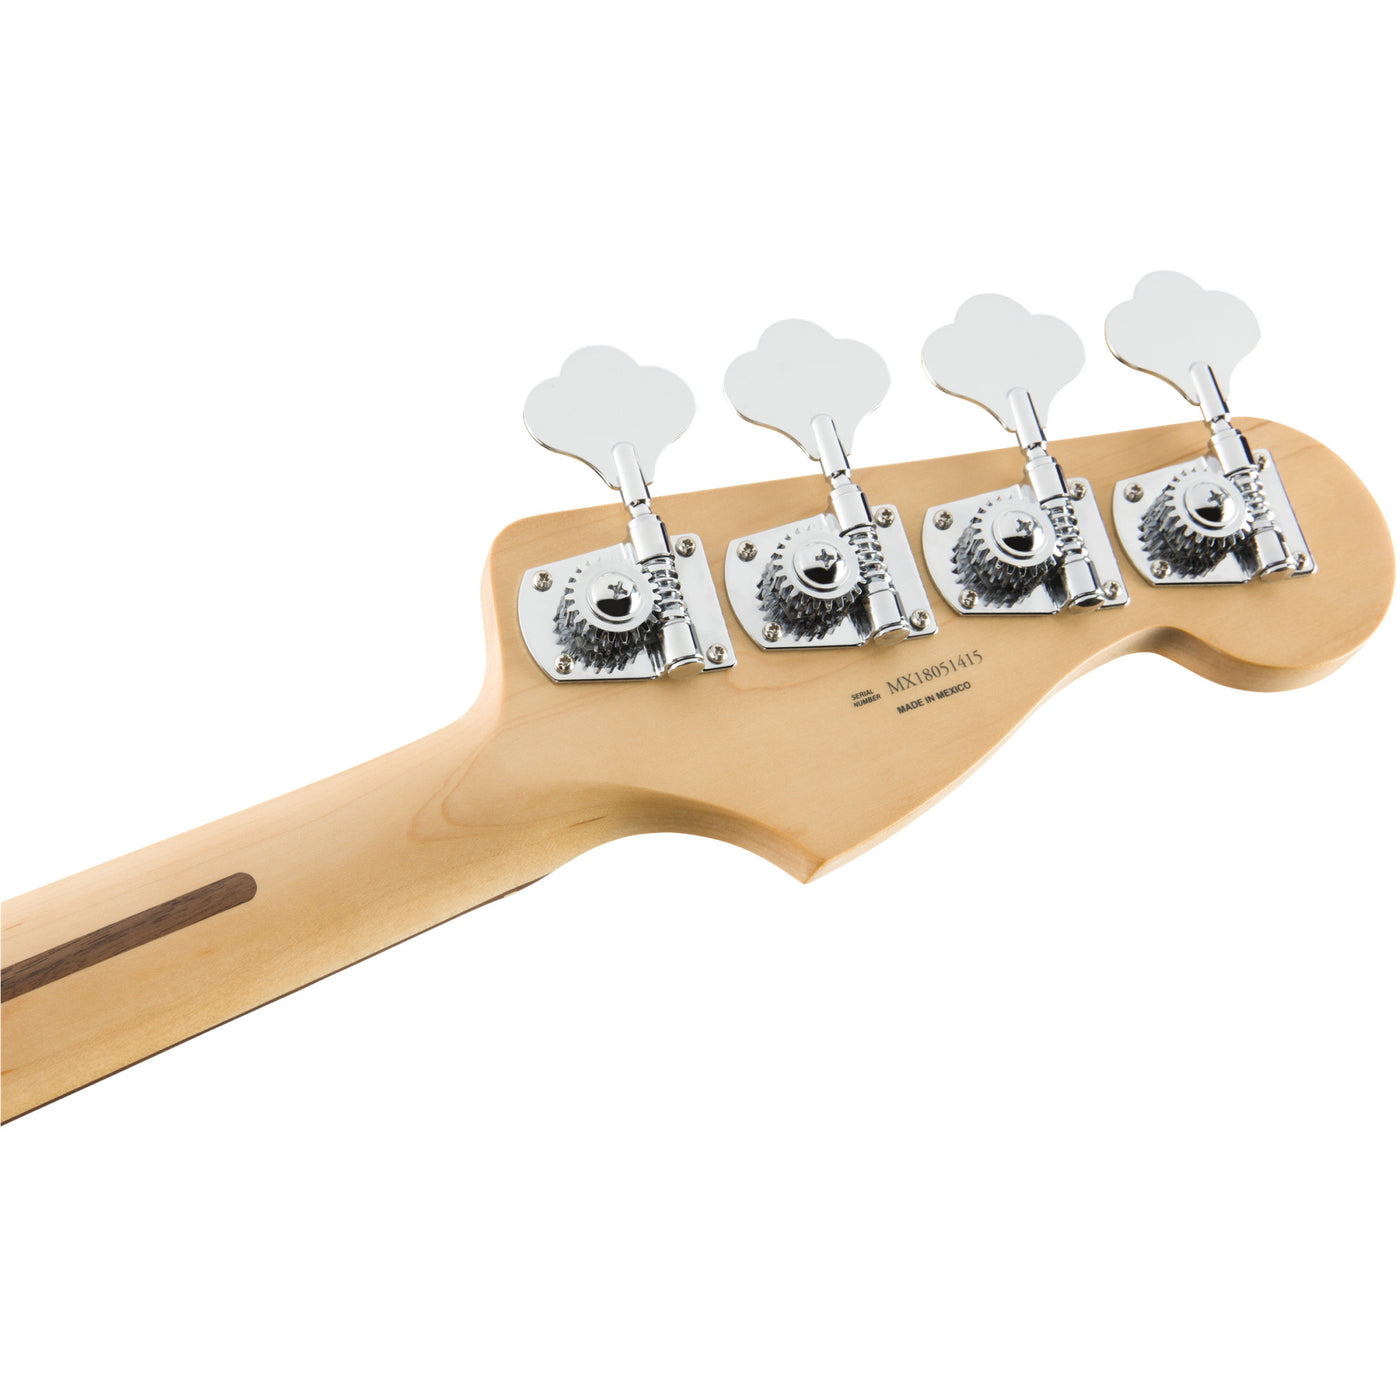 Fender Player Jazz Bass Left-Handed, 3-Color Sunburst (0149923500)